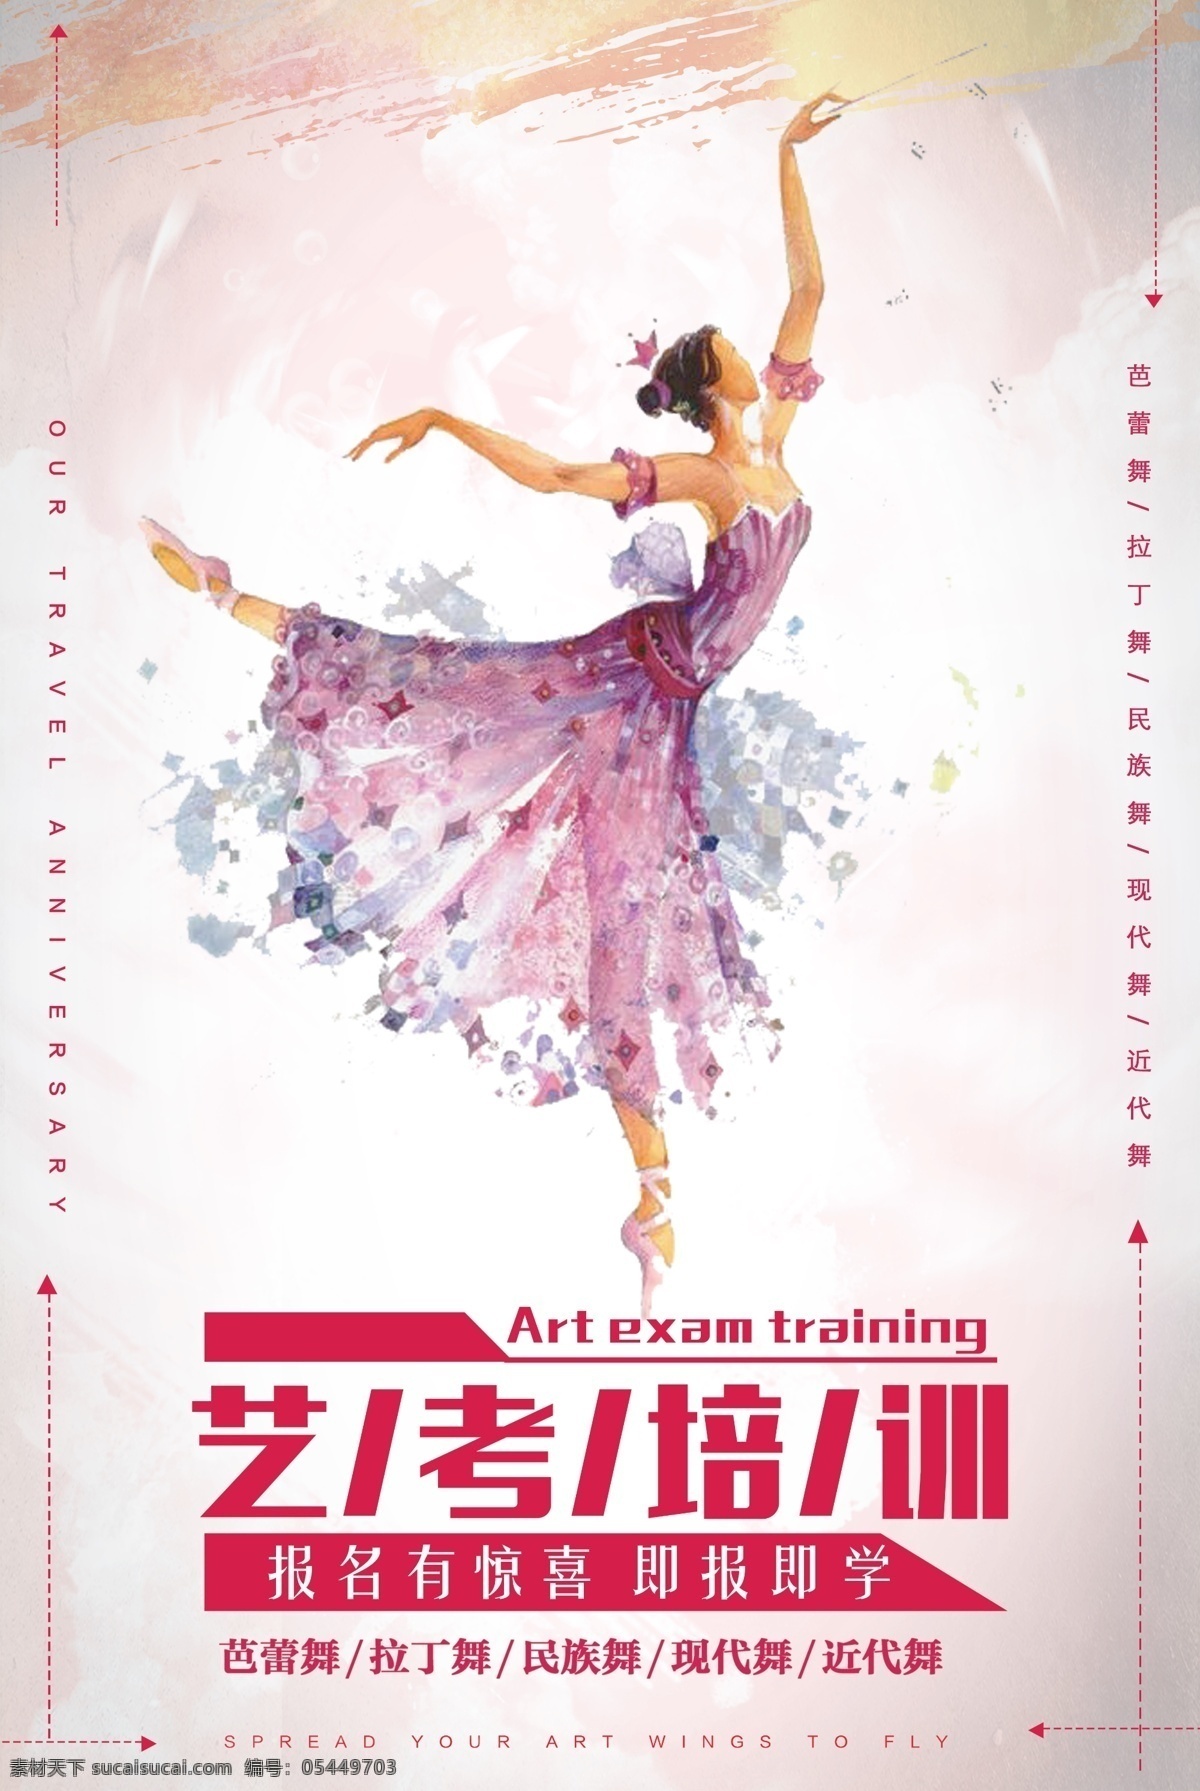 艺考培训 培训宣传 艺考宣传 培训广告 创意广告 创意海报 金色字体 舞蹈老师 舞蹈美女 招生